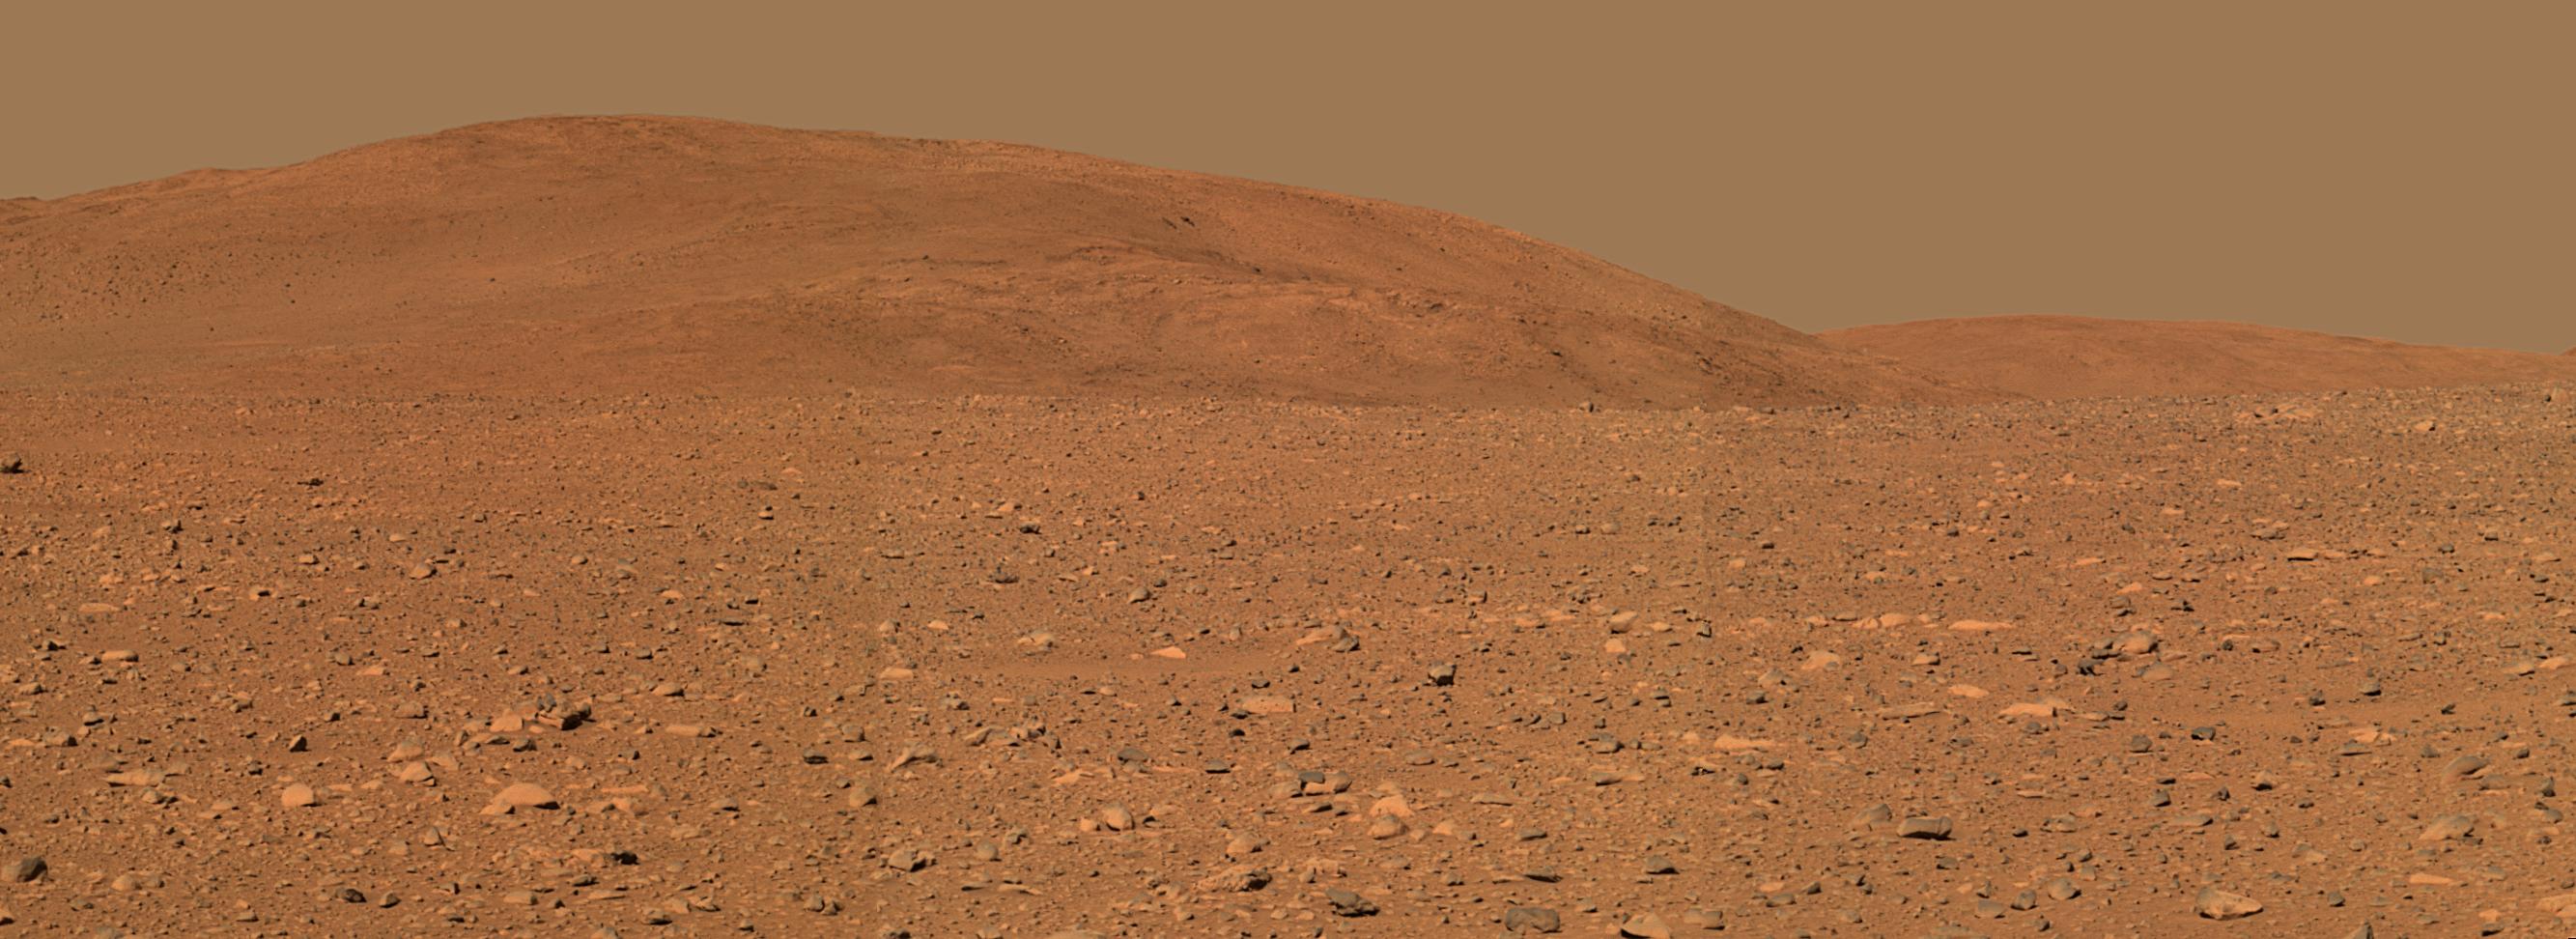 Le rover Spirit arrive aux collines Columbia de Mars 